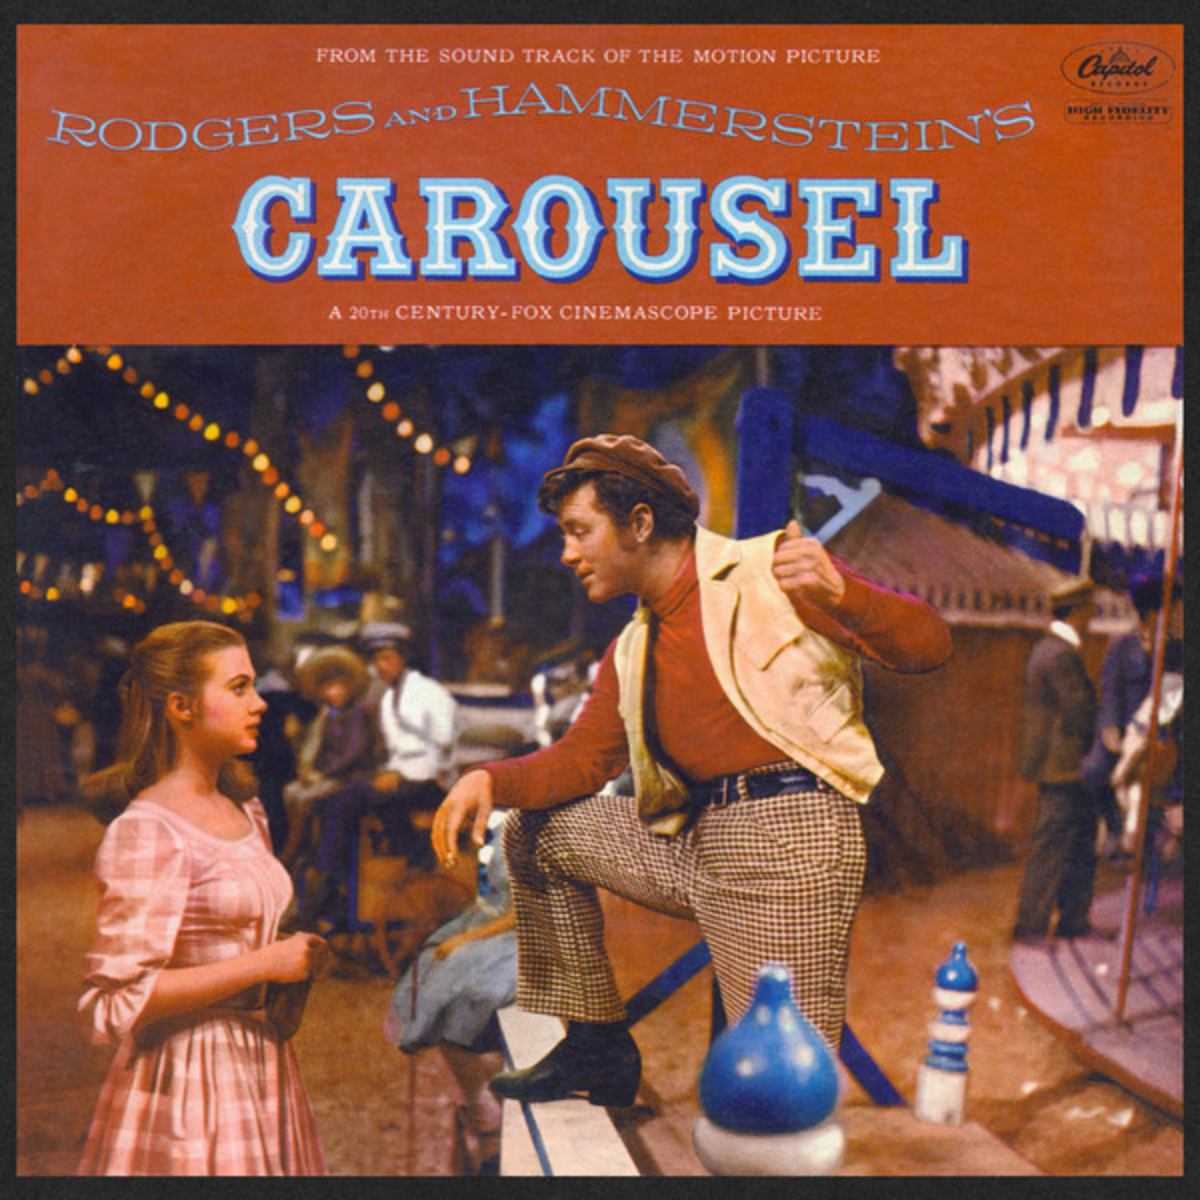 Carousel (album cover)